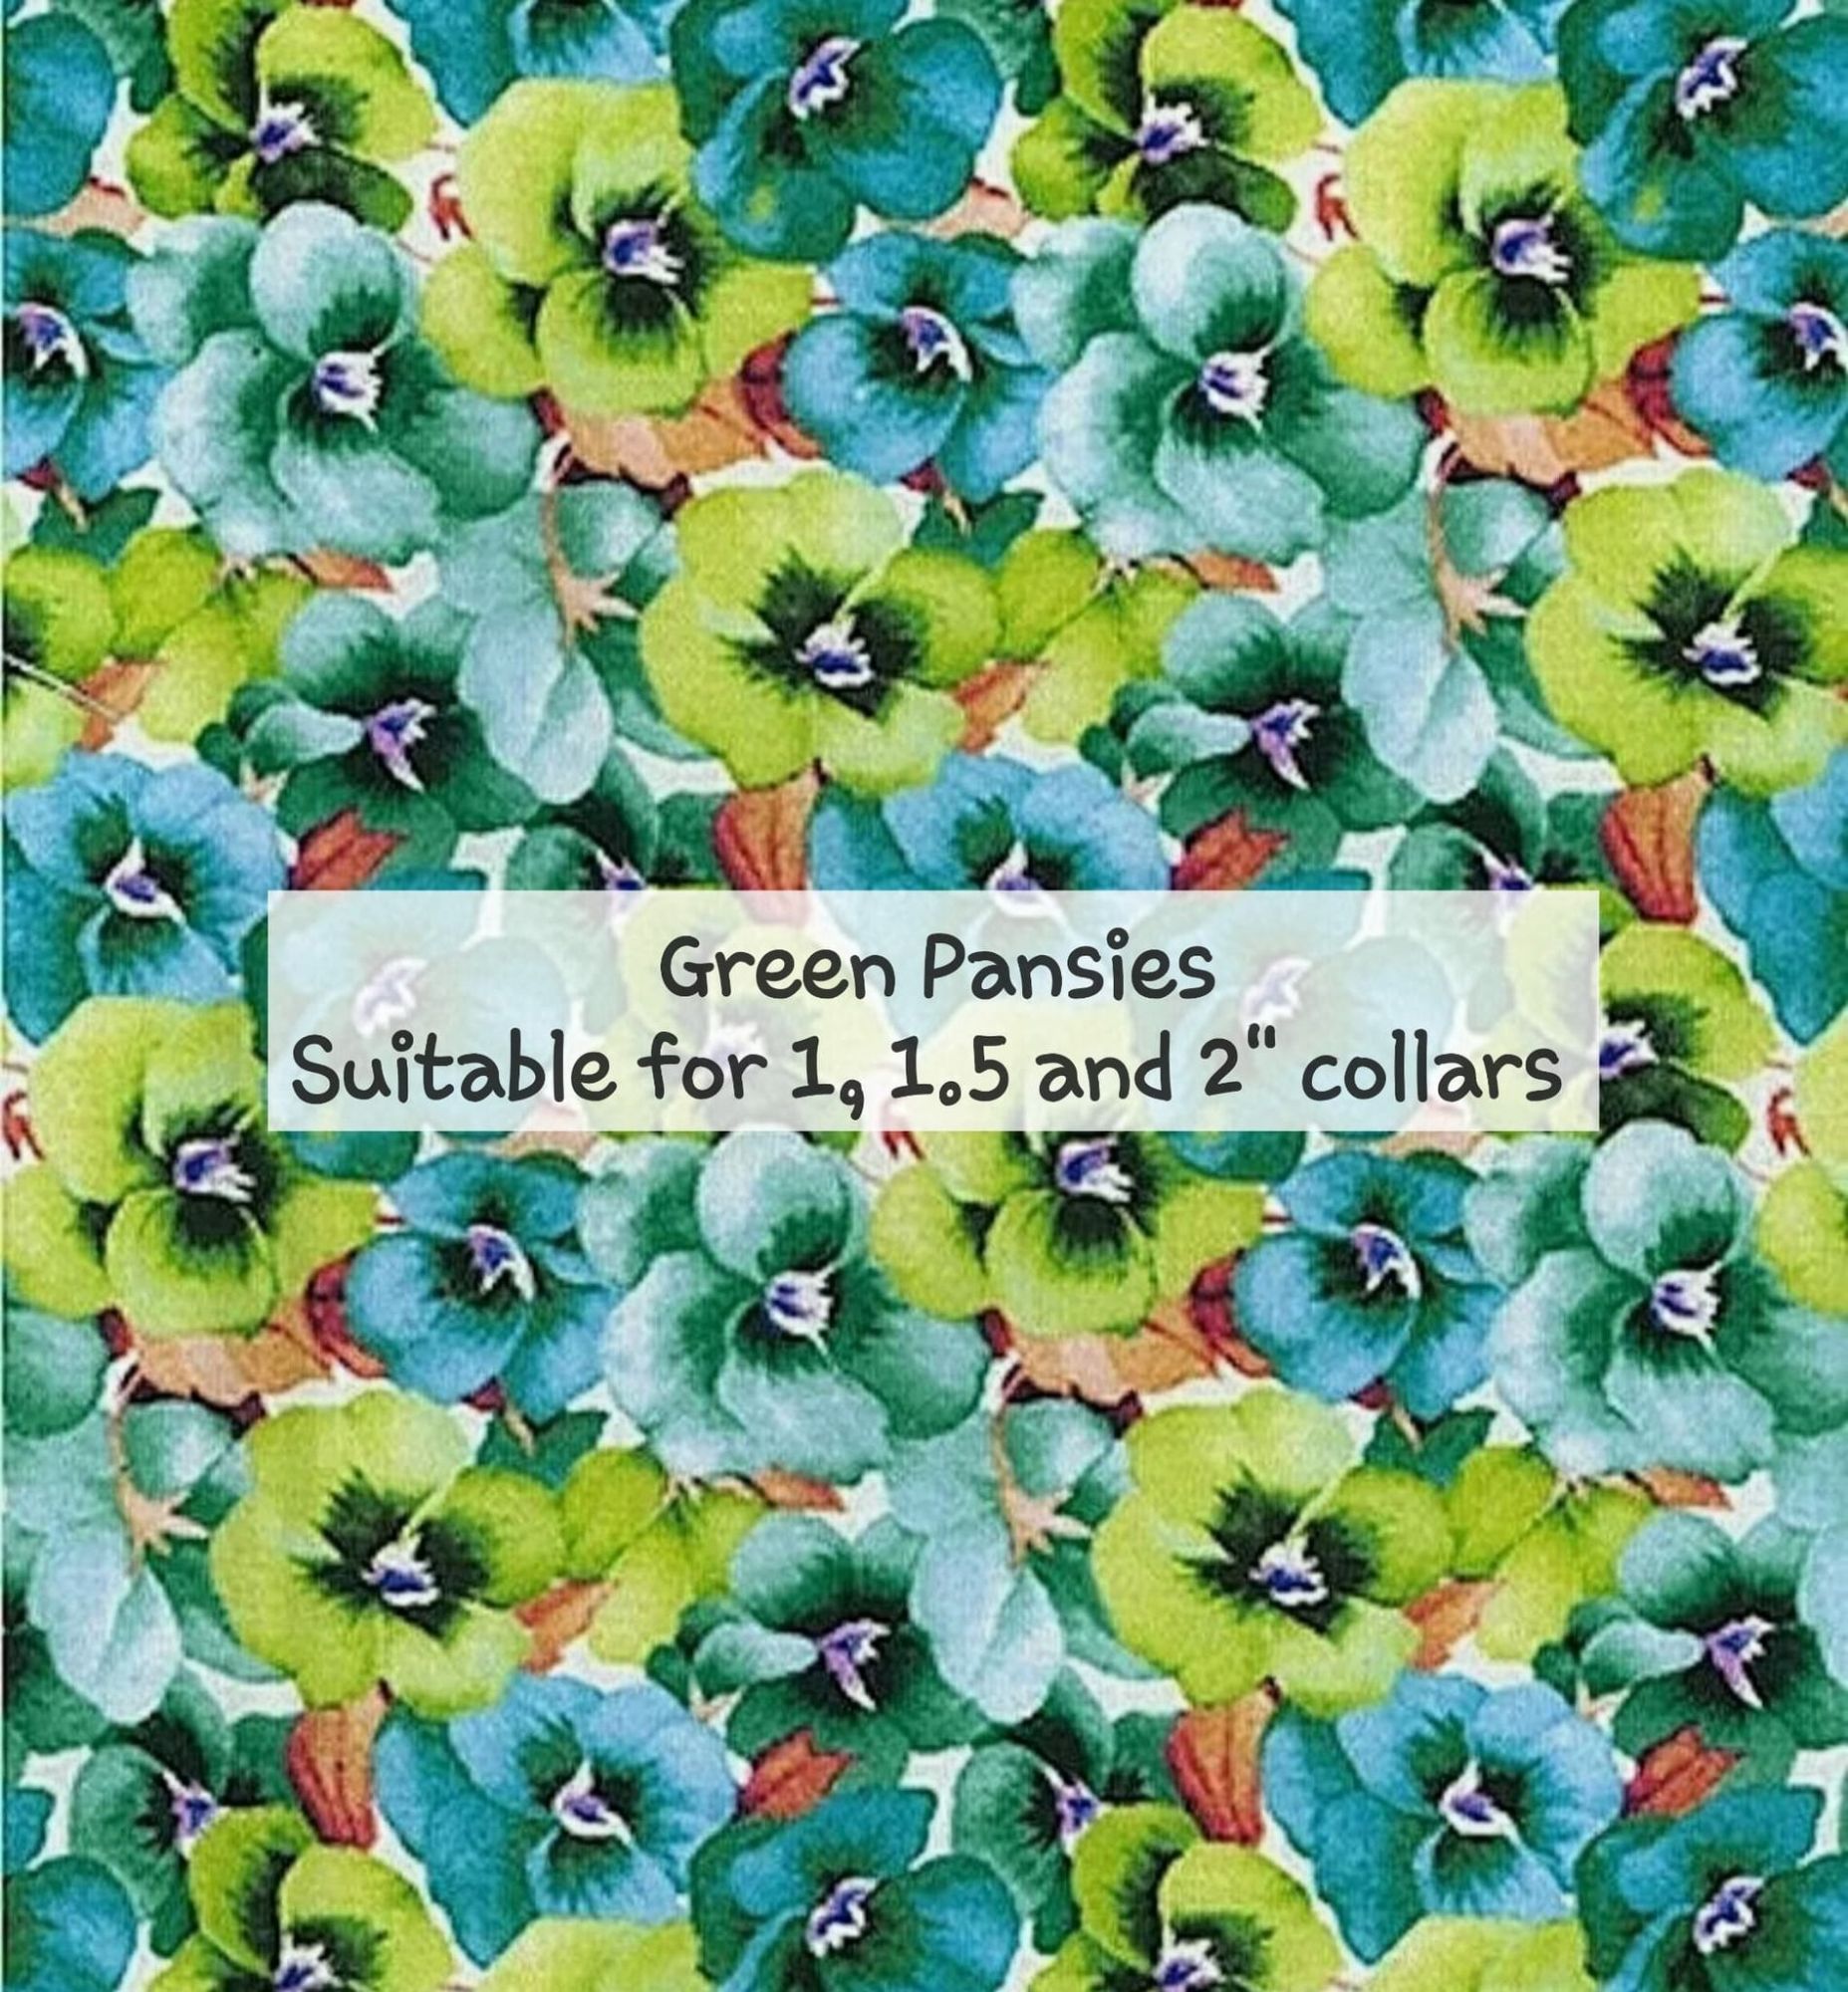 Green Pansies